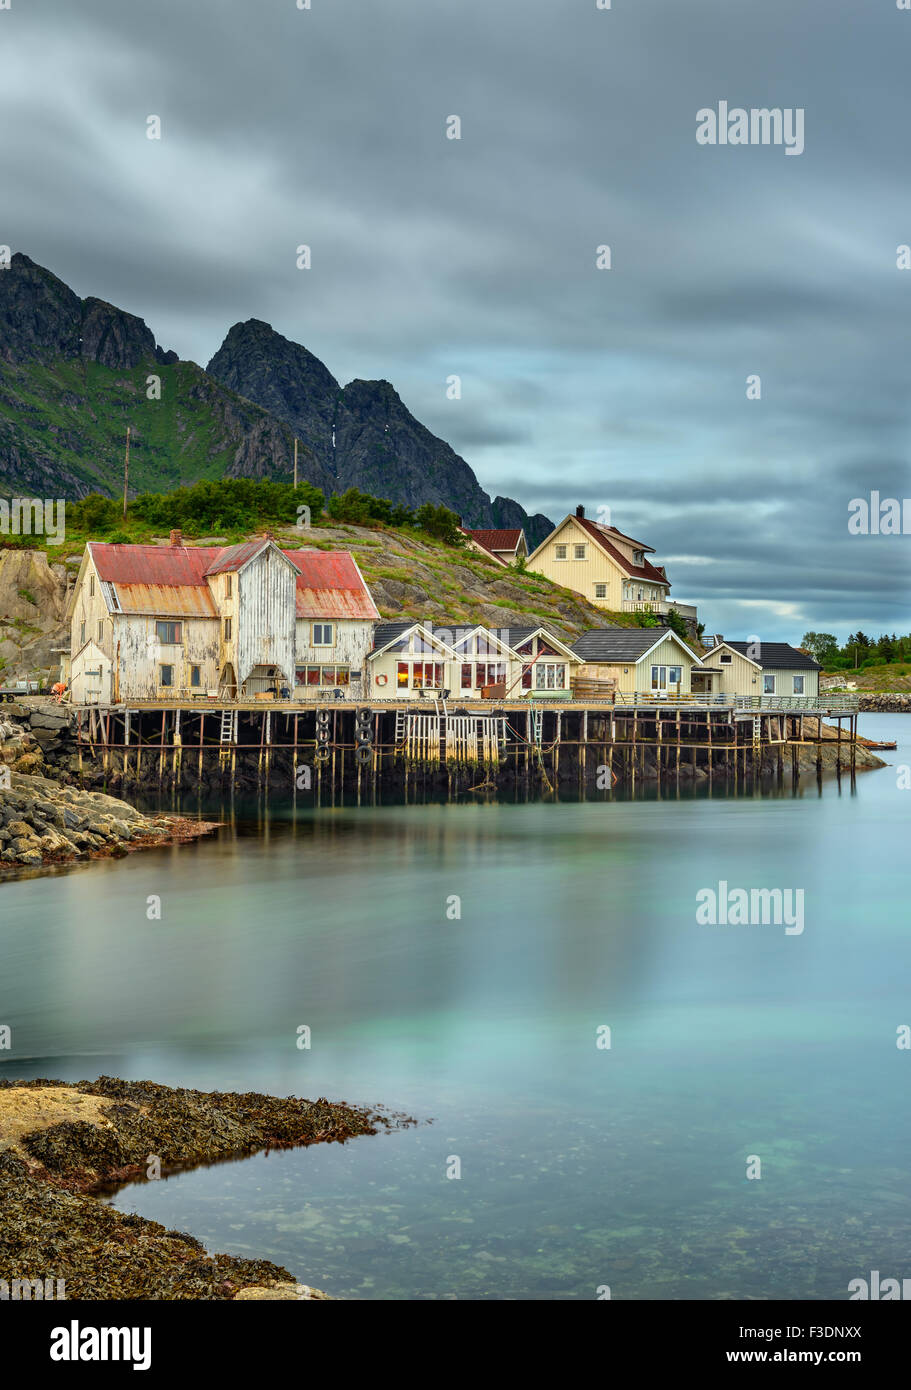 Henningsvær, village de pêcheurs situé sur plusieurs petites îles dans l'archipel des Lofoten, Norvège. Longue exposition. Banque D'Images